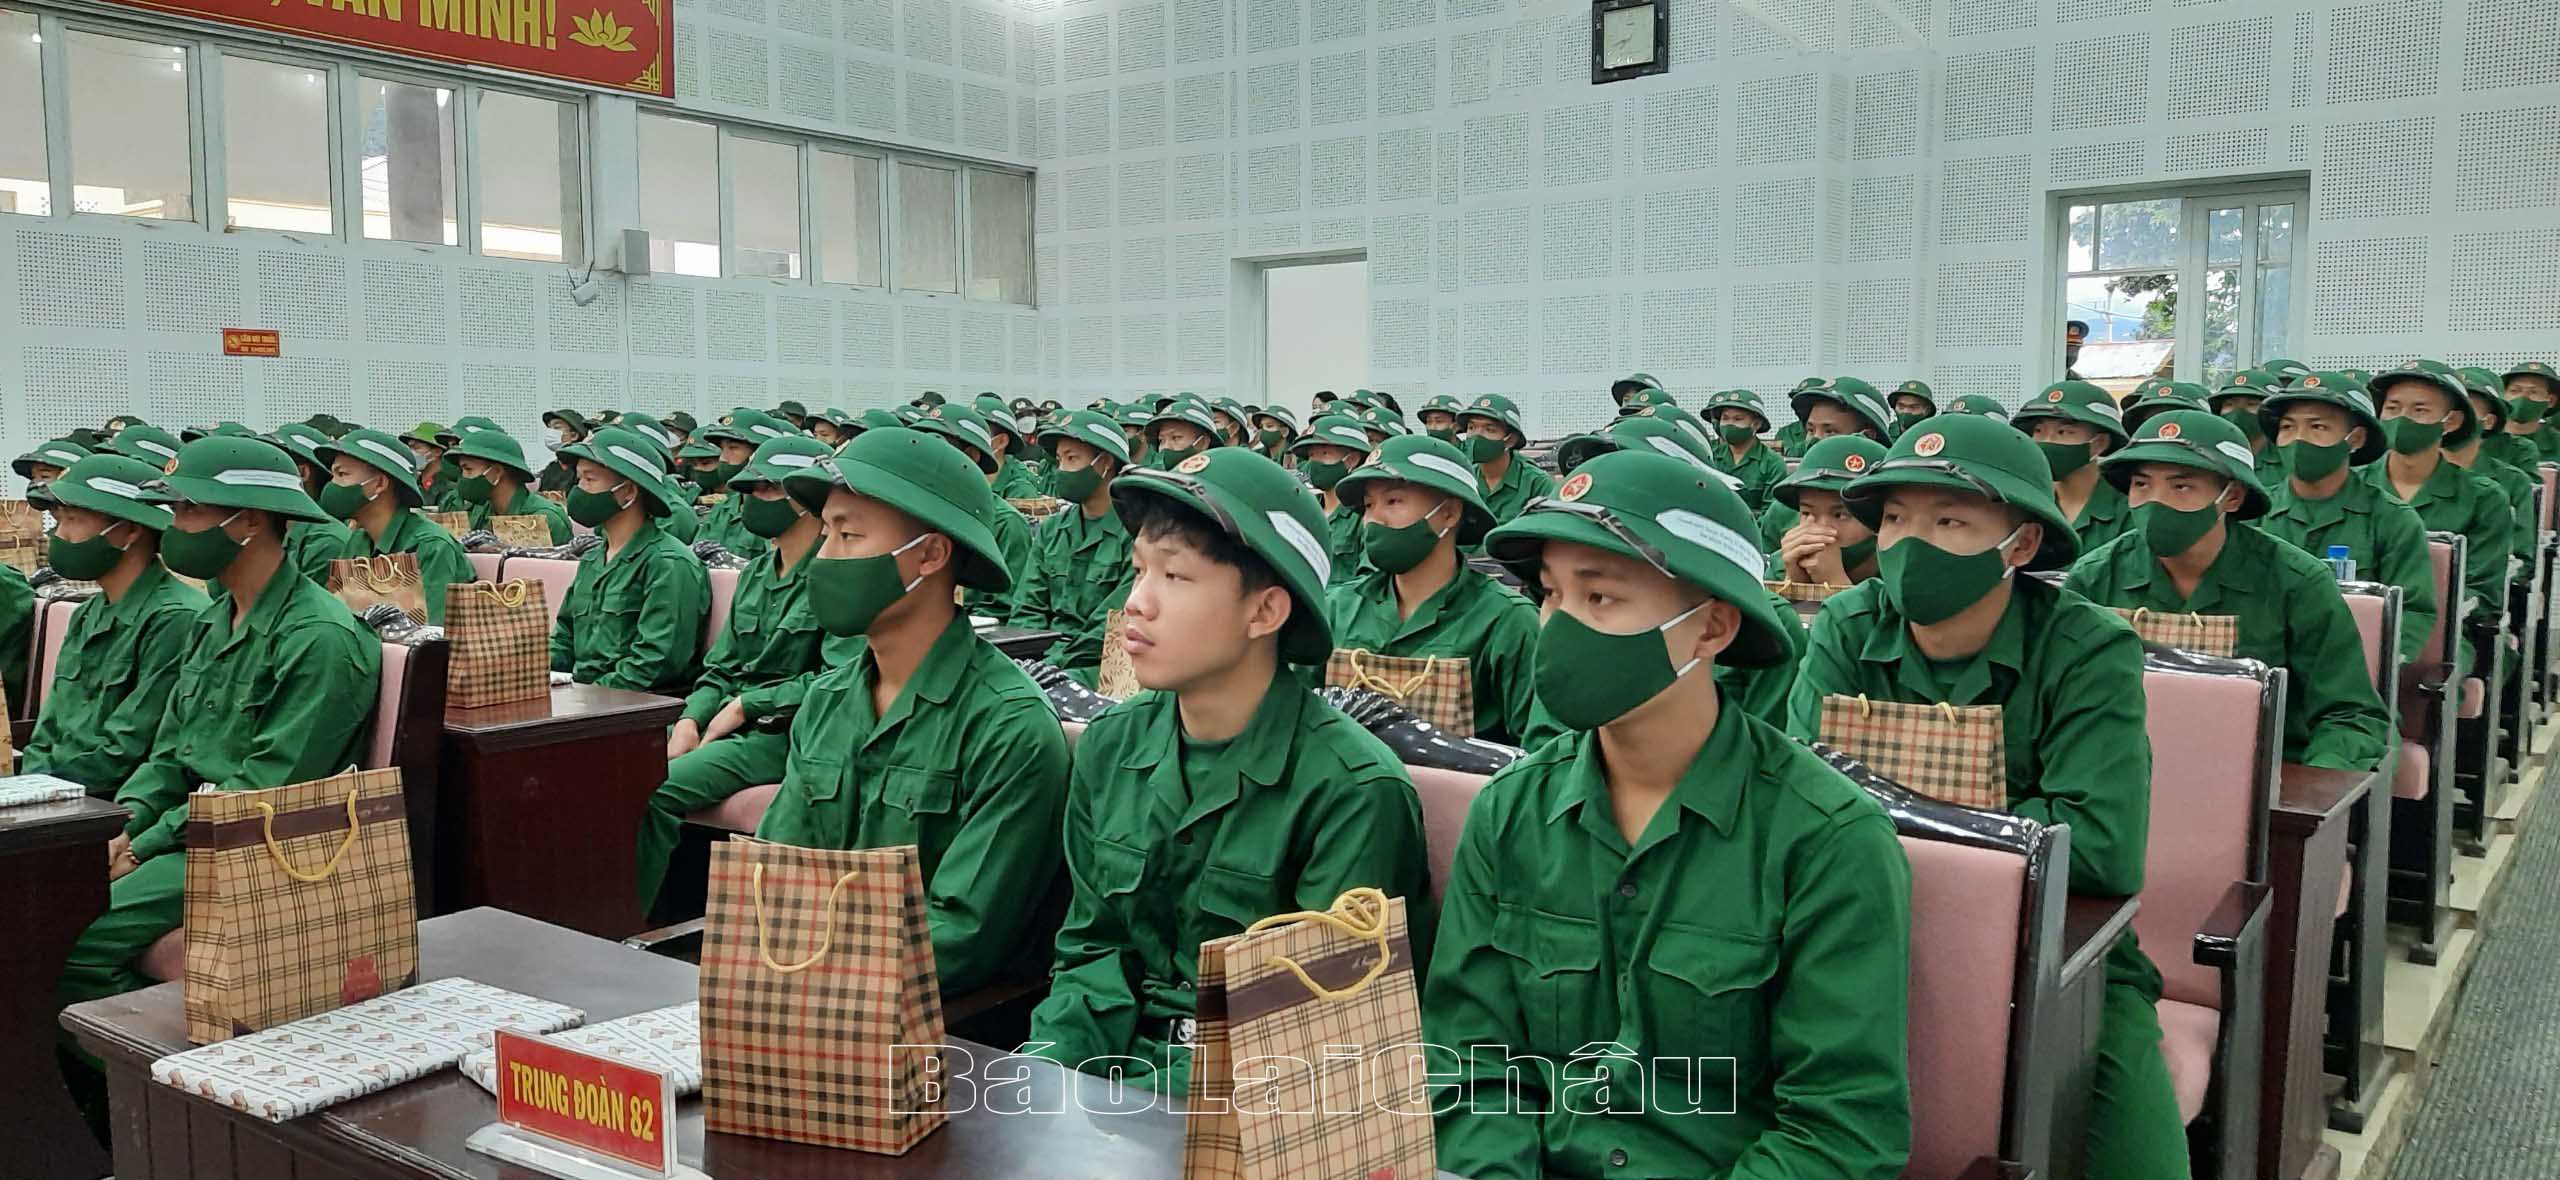 Tân binh huyện Mường Tè sẵn sàng lên đường nhận nhiệm vụ bảo vệ Tổ quốc.